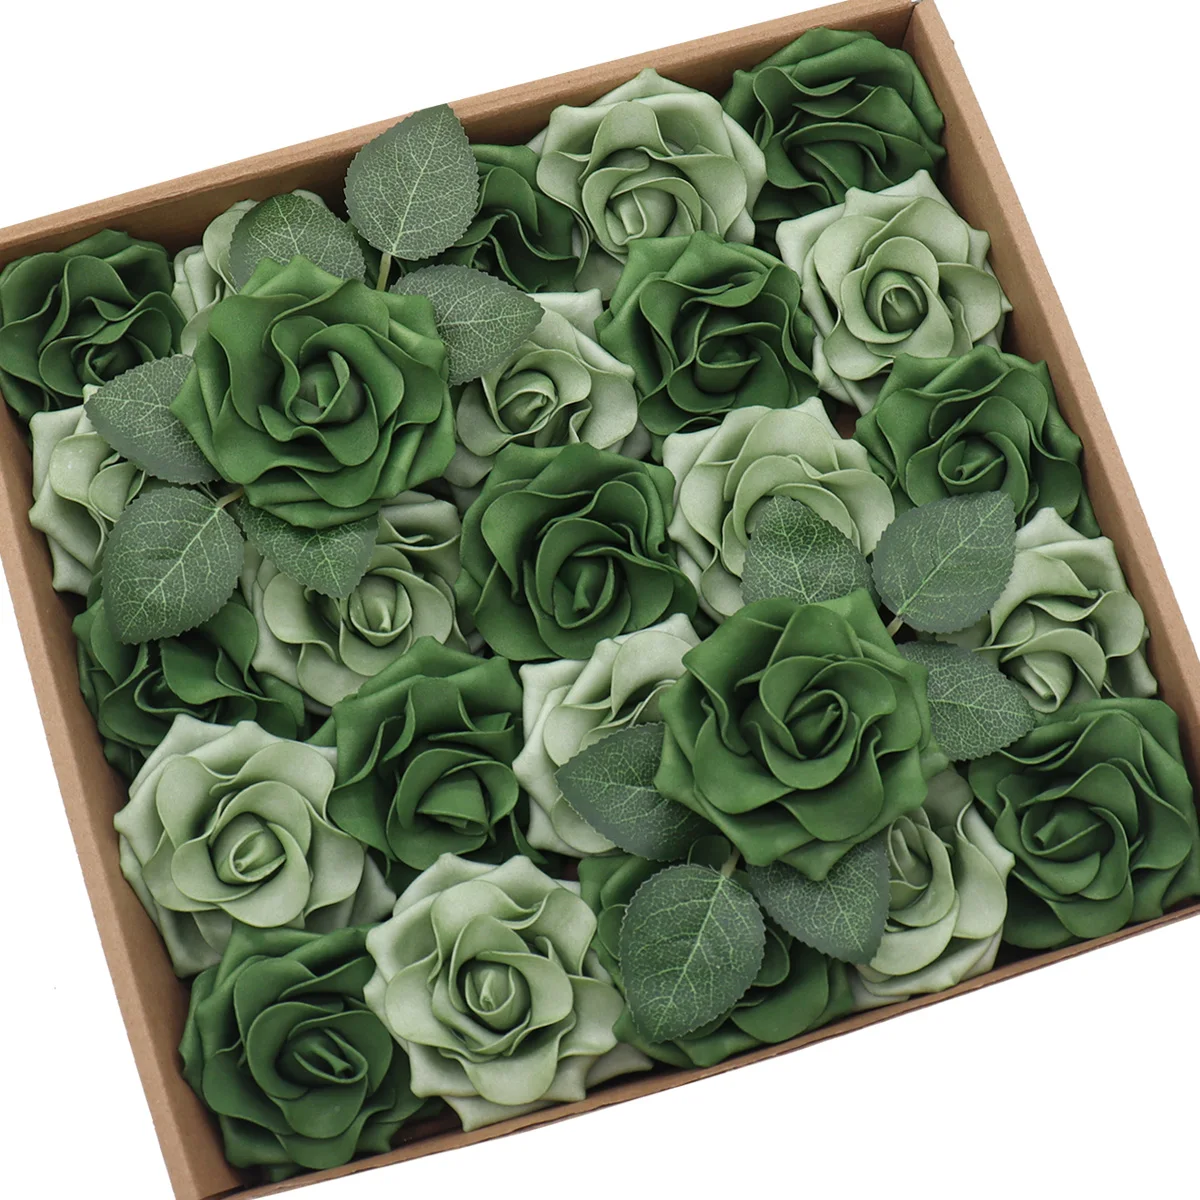 

D-Seven Artificial Foam Flowers 25pcs Petite Avalanche Rose w/Stem for DIY Wedding Decor Table Floral Centerpiece Wreath Making